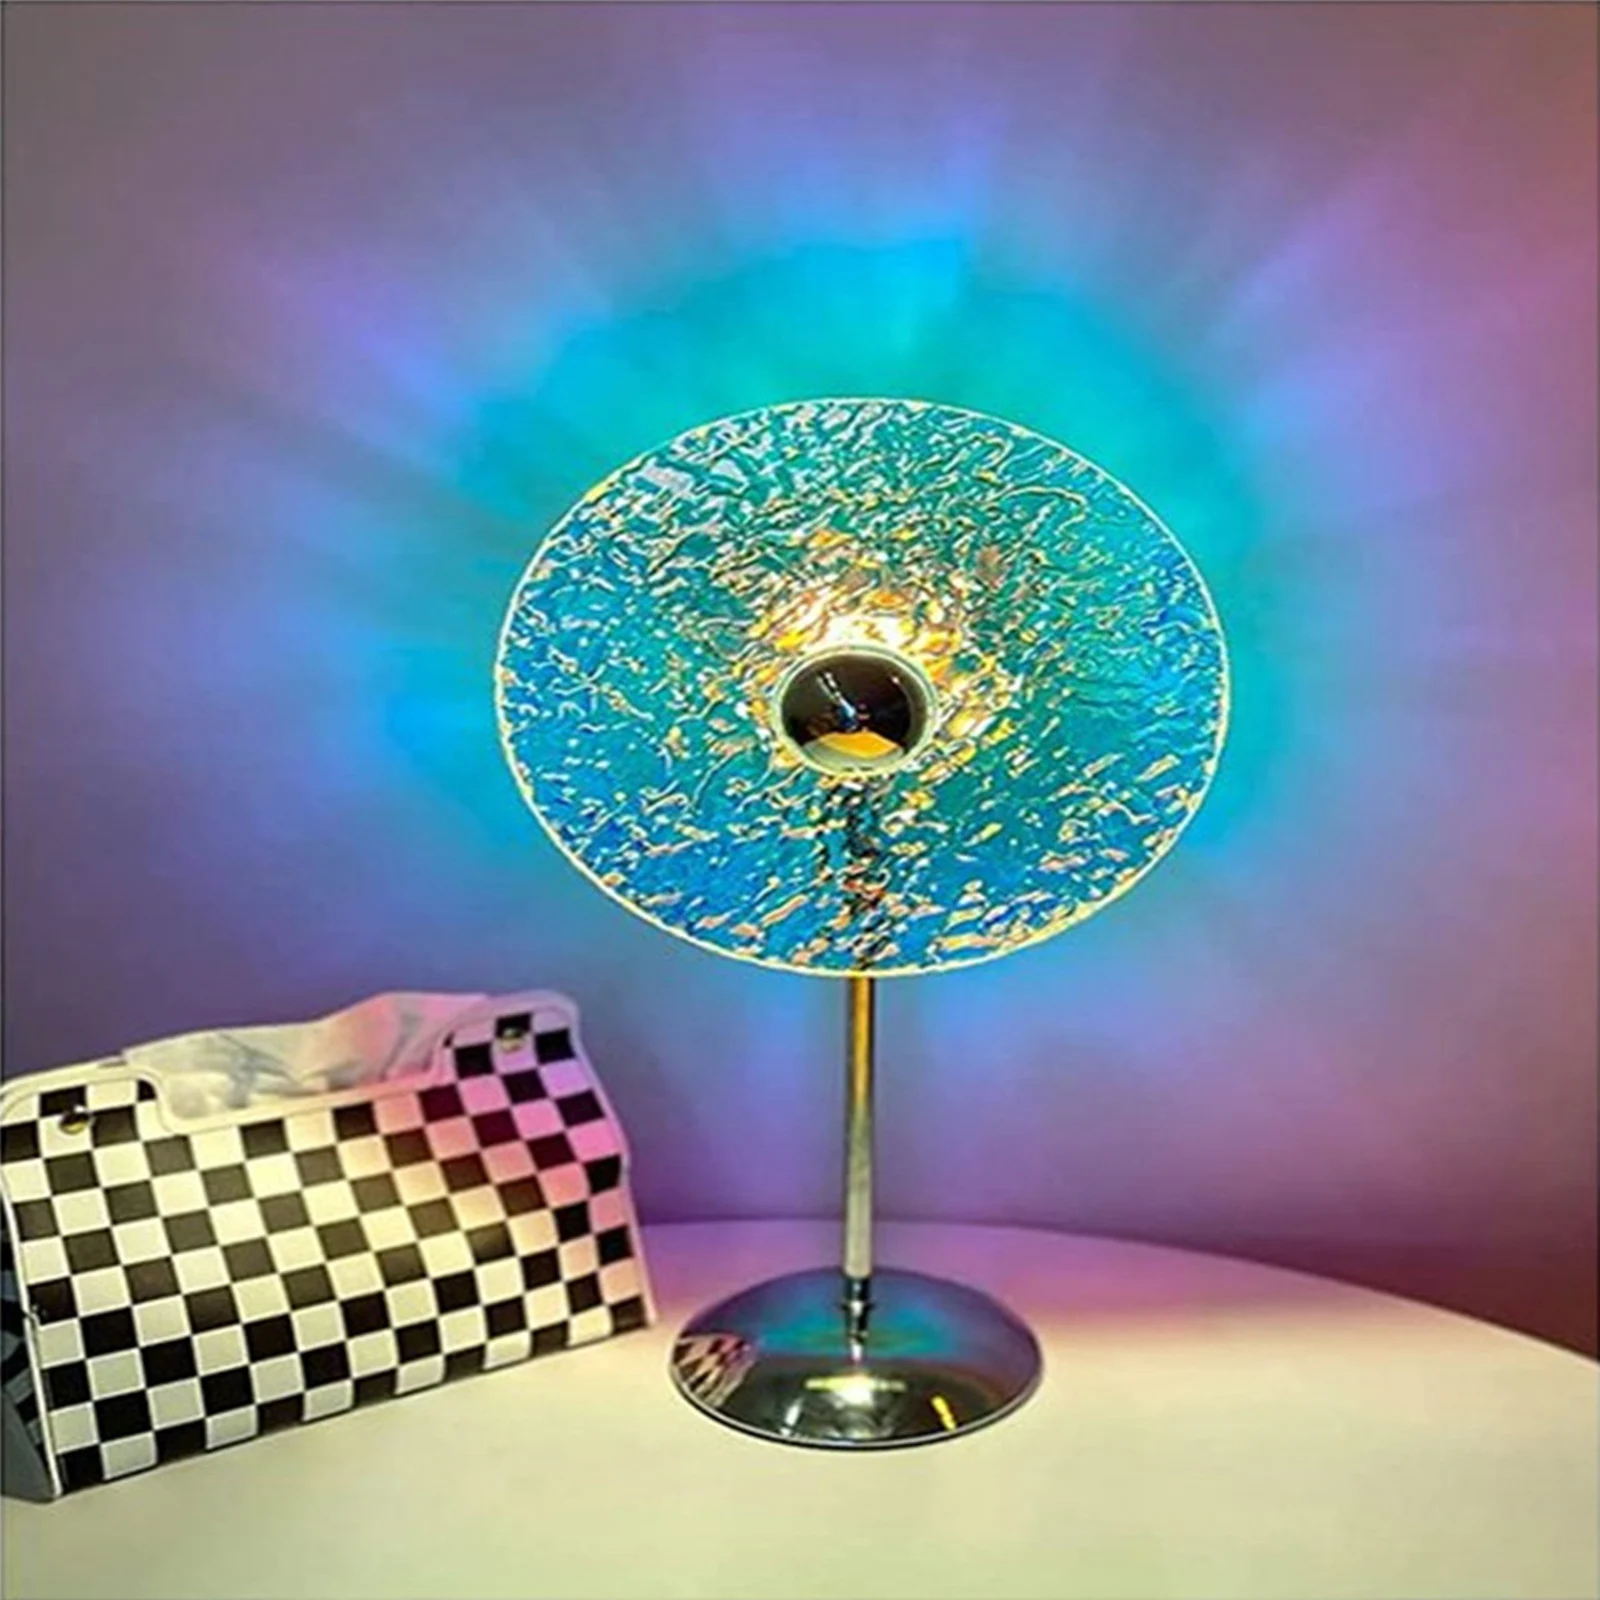 

Светодиодный напольный светильник Ice Cube настольная лампа атмосфера настольное украшение Ночник проектор фон для спальни